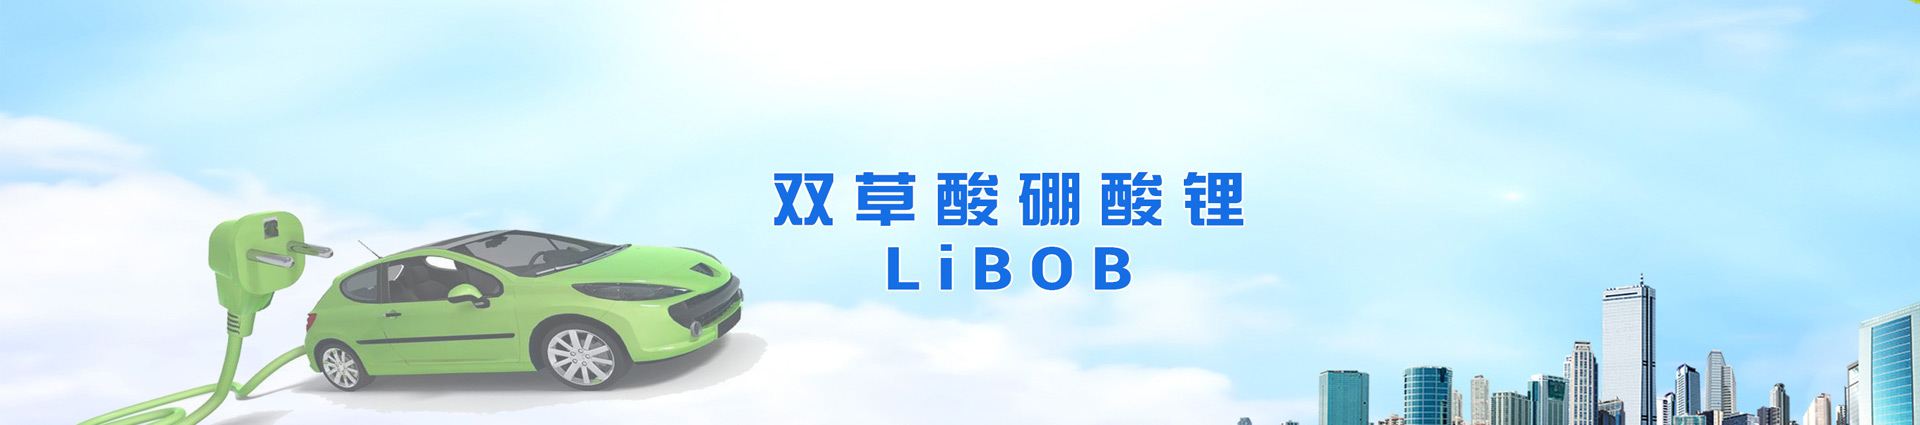 双草酸硼酸锂(LiBOB)